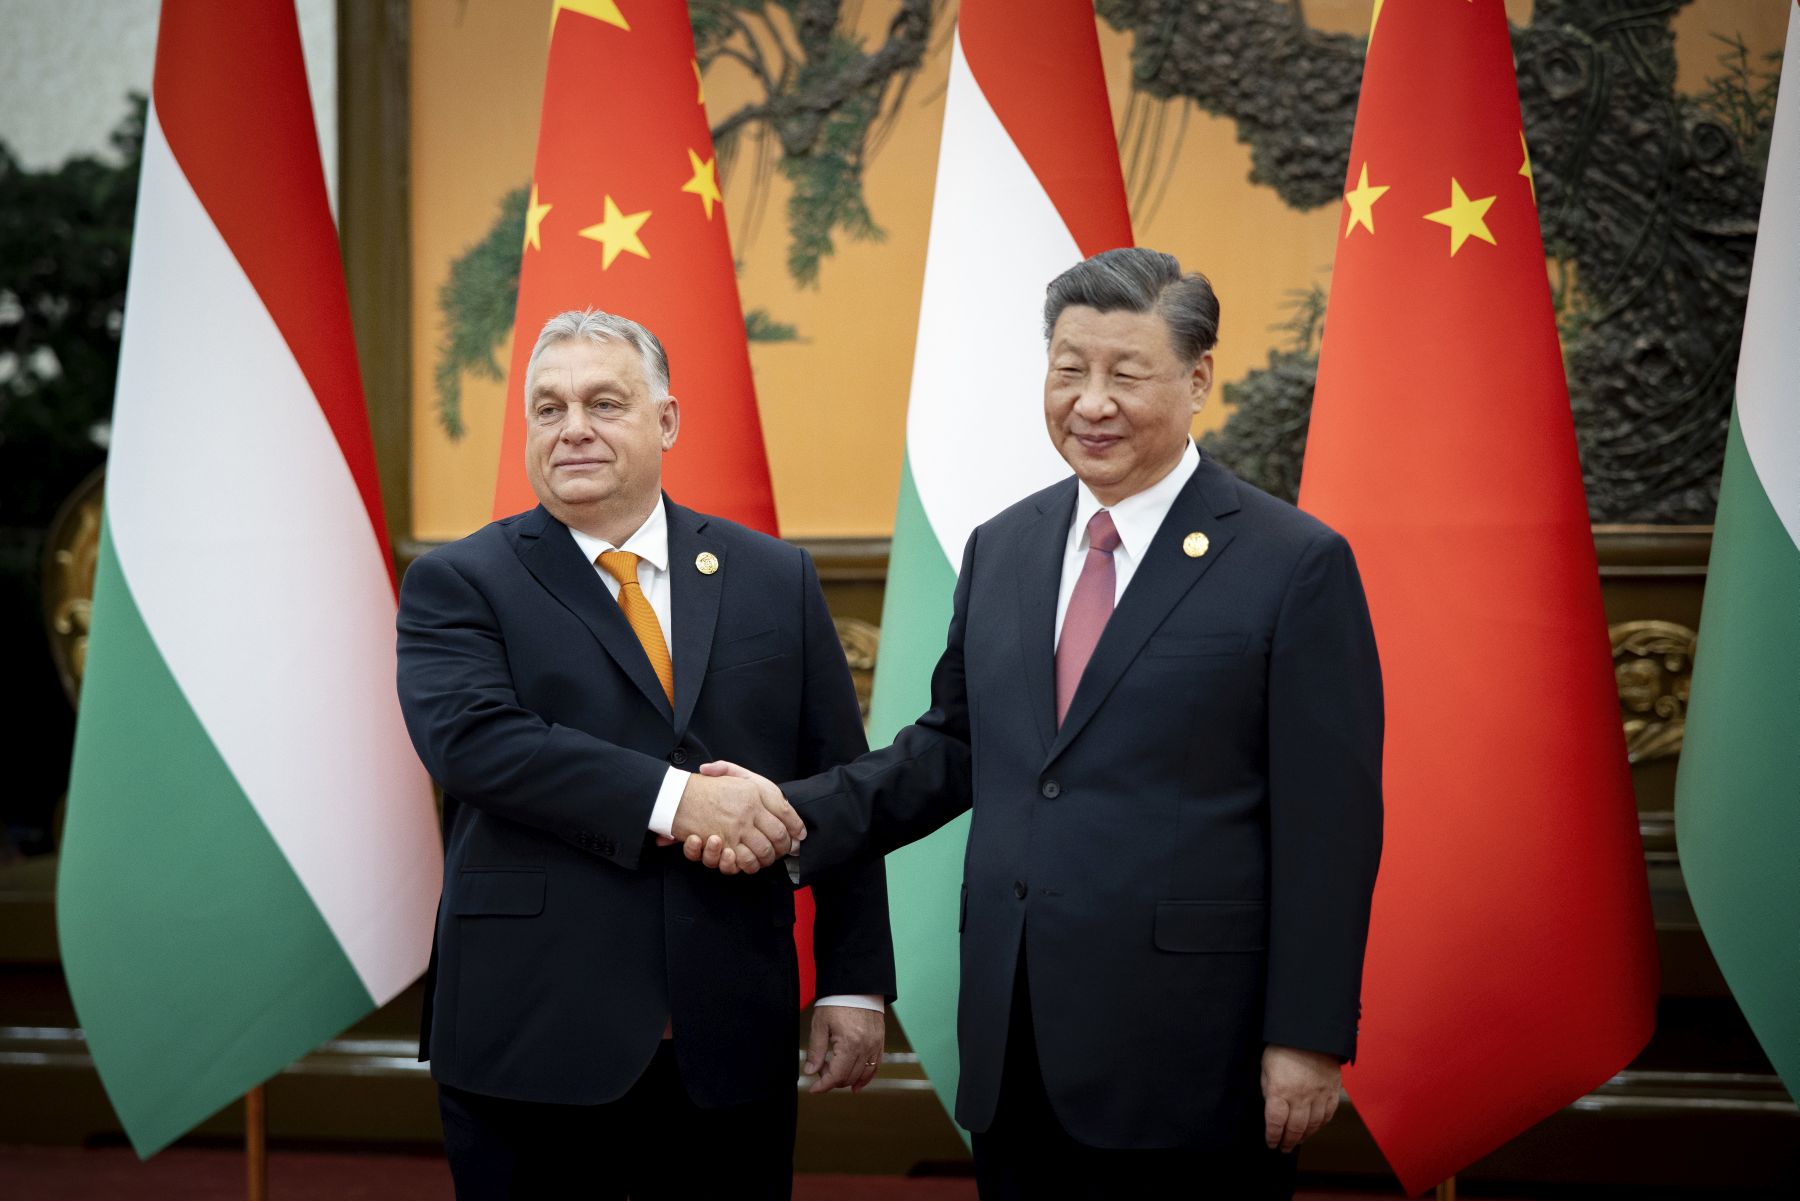 A magyarországi kínai nagykövet szerint sikeres volt Orbán Viktor pekingi látogatása